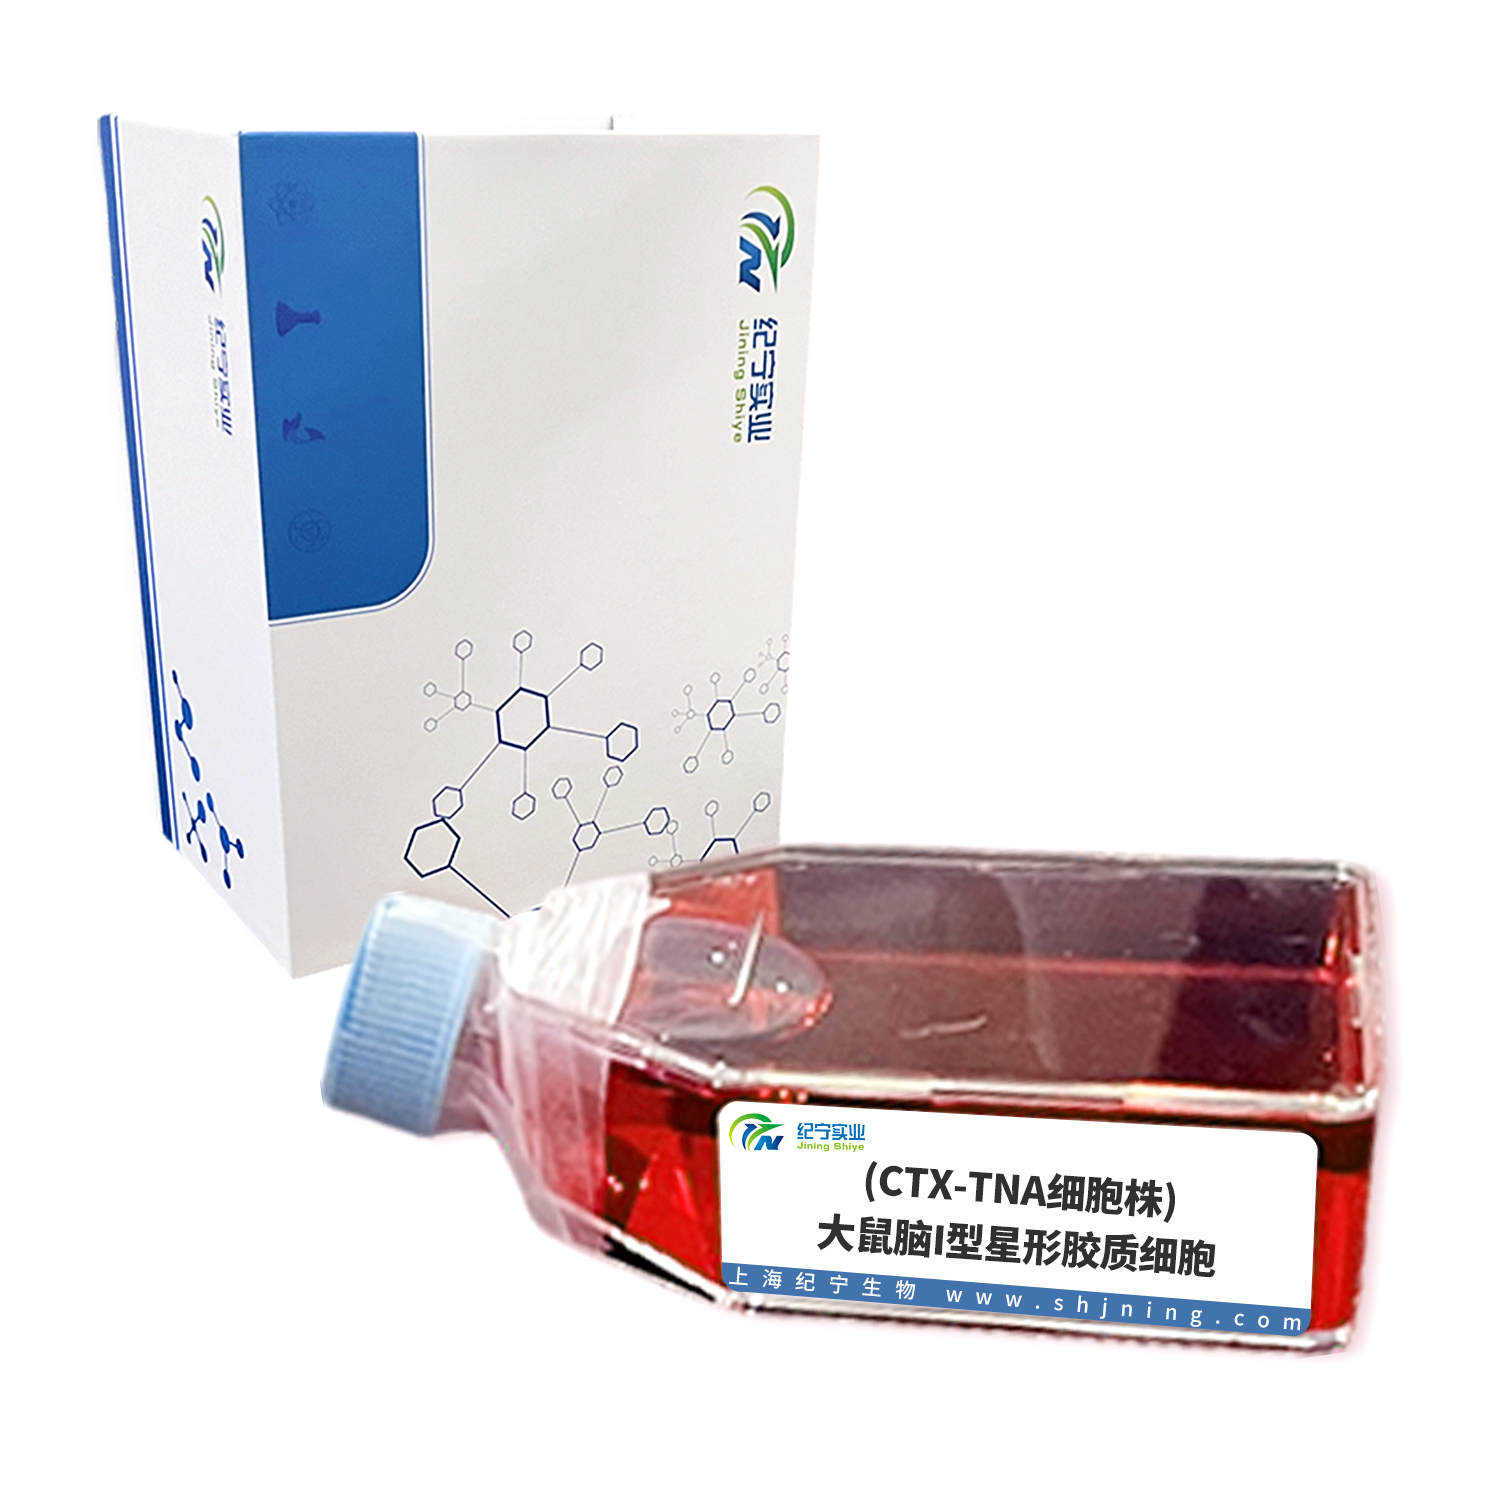 (CTX-TNA细胞株)大鼠脑I型星形胶质细胞